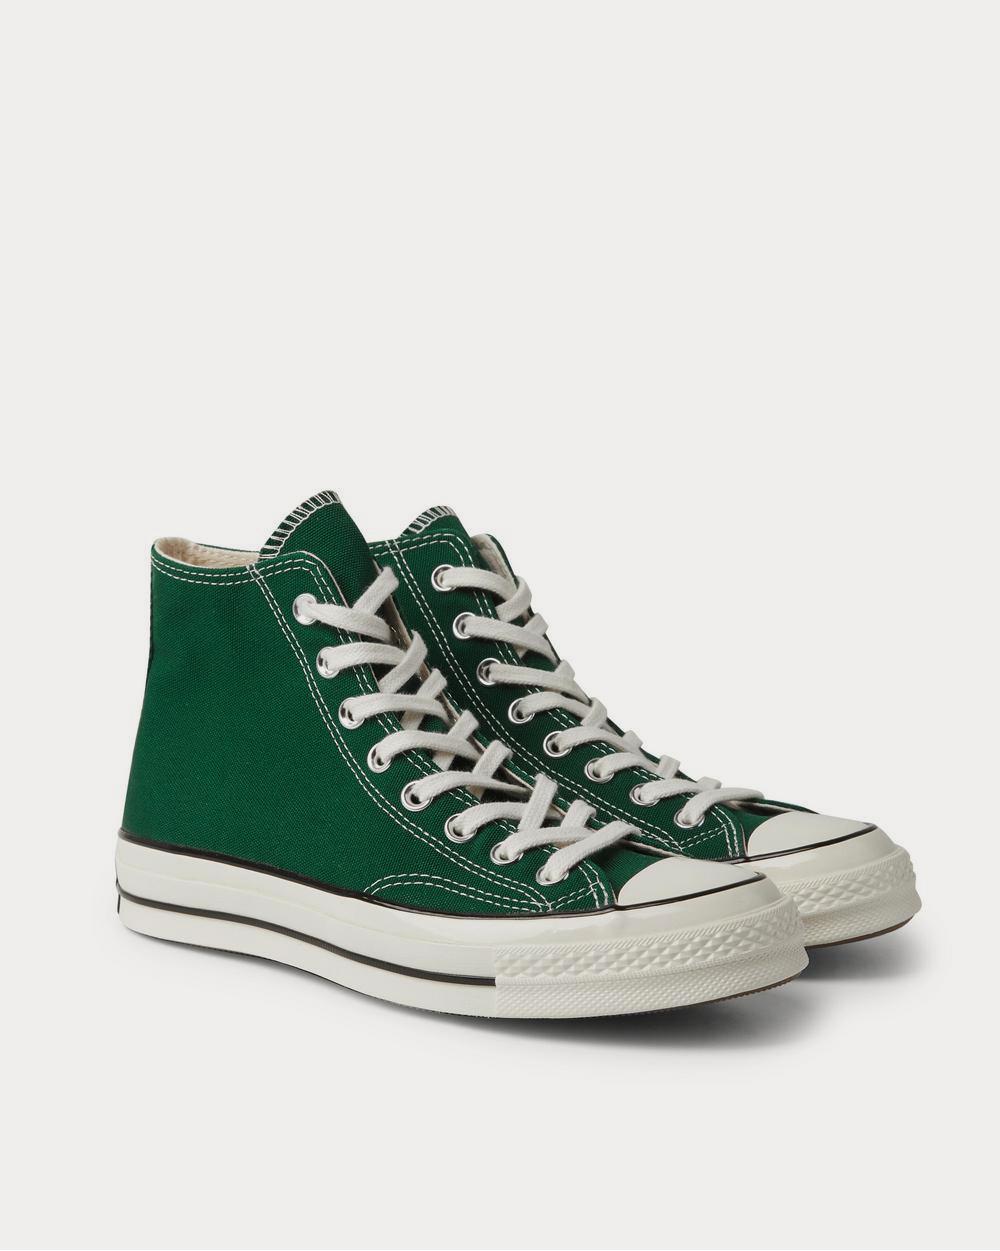 Converse - Chuck 70 Canvas  Green high top sneakers